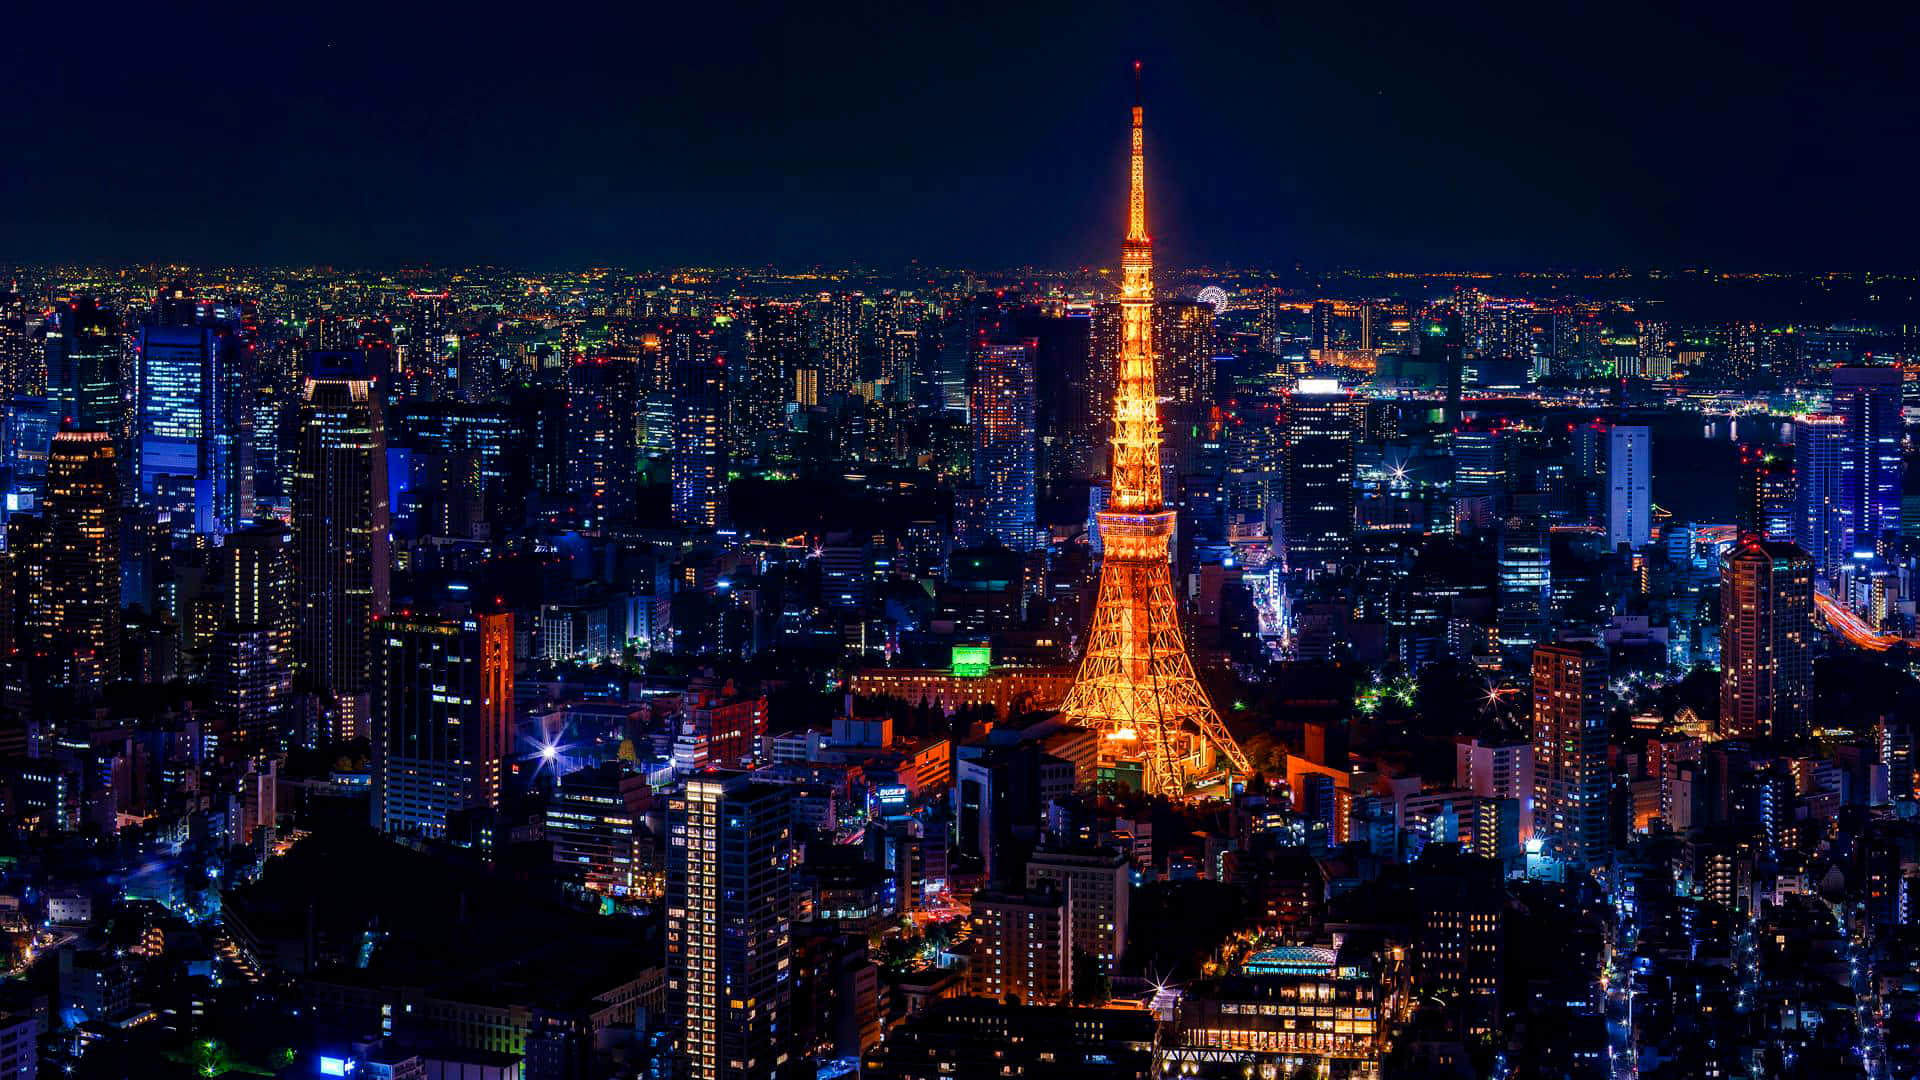 Hintergrundbildvon Tokyo: Isolierter Tokyo Tower Im Hellen Licht